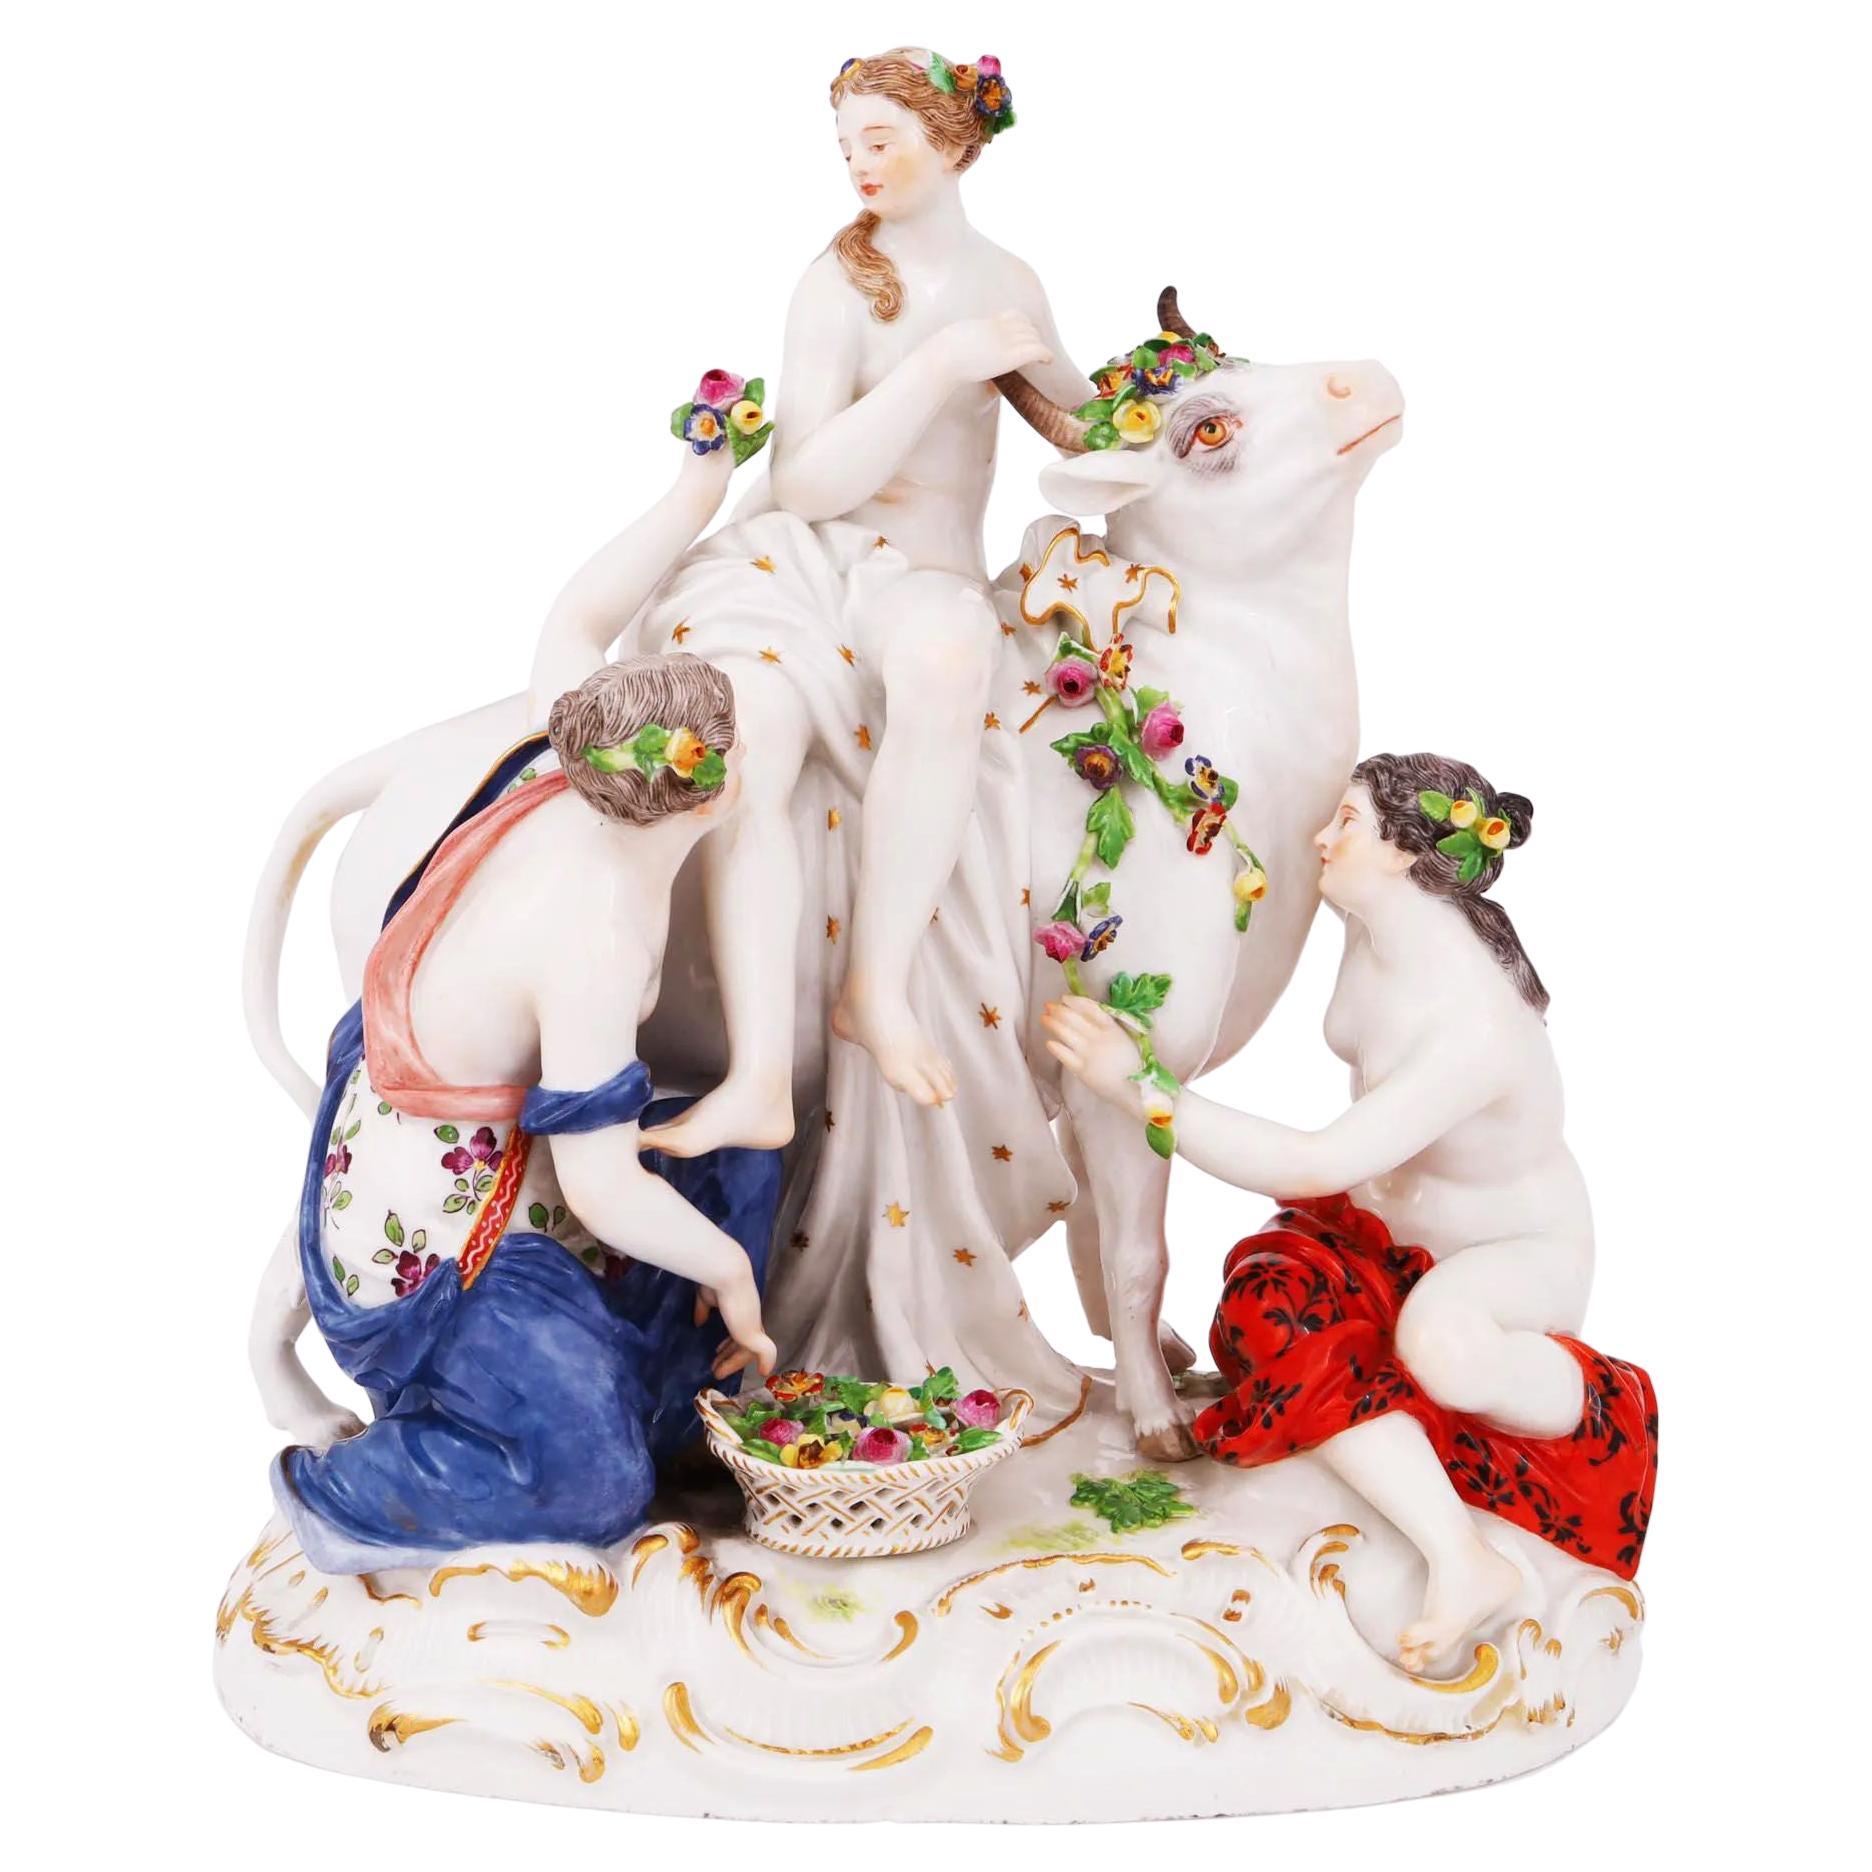 Meissen Porcelain Figurine Depicting Rape of Europa